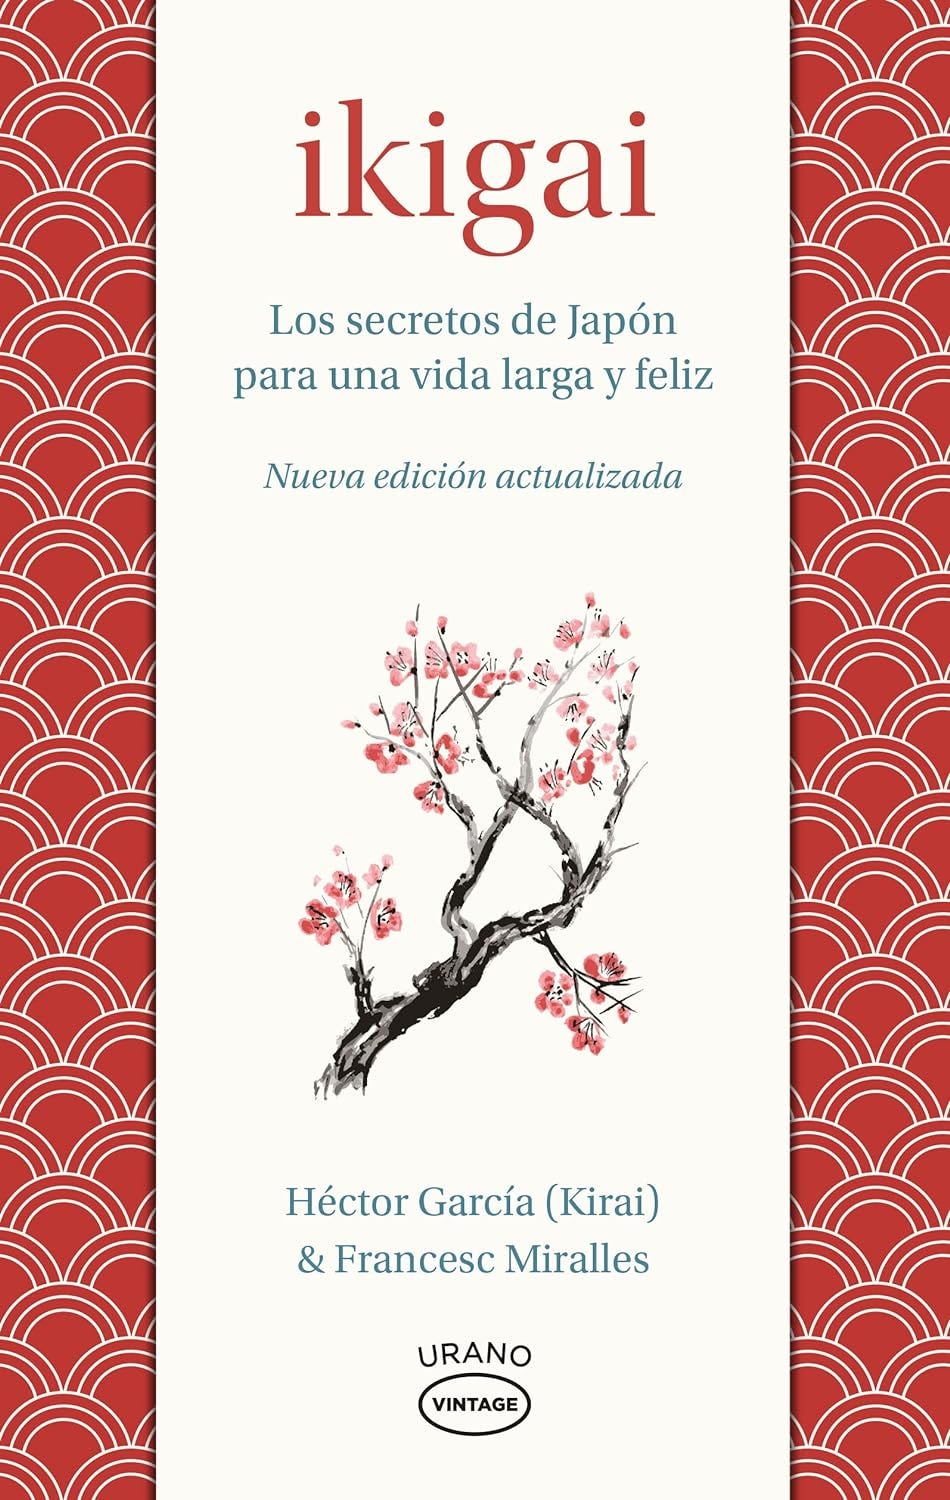 Ikigai: Los secretos de Japón para una vida larga y joven de Francesc Miralles y Héctor García